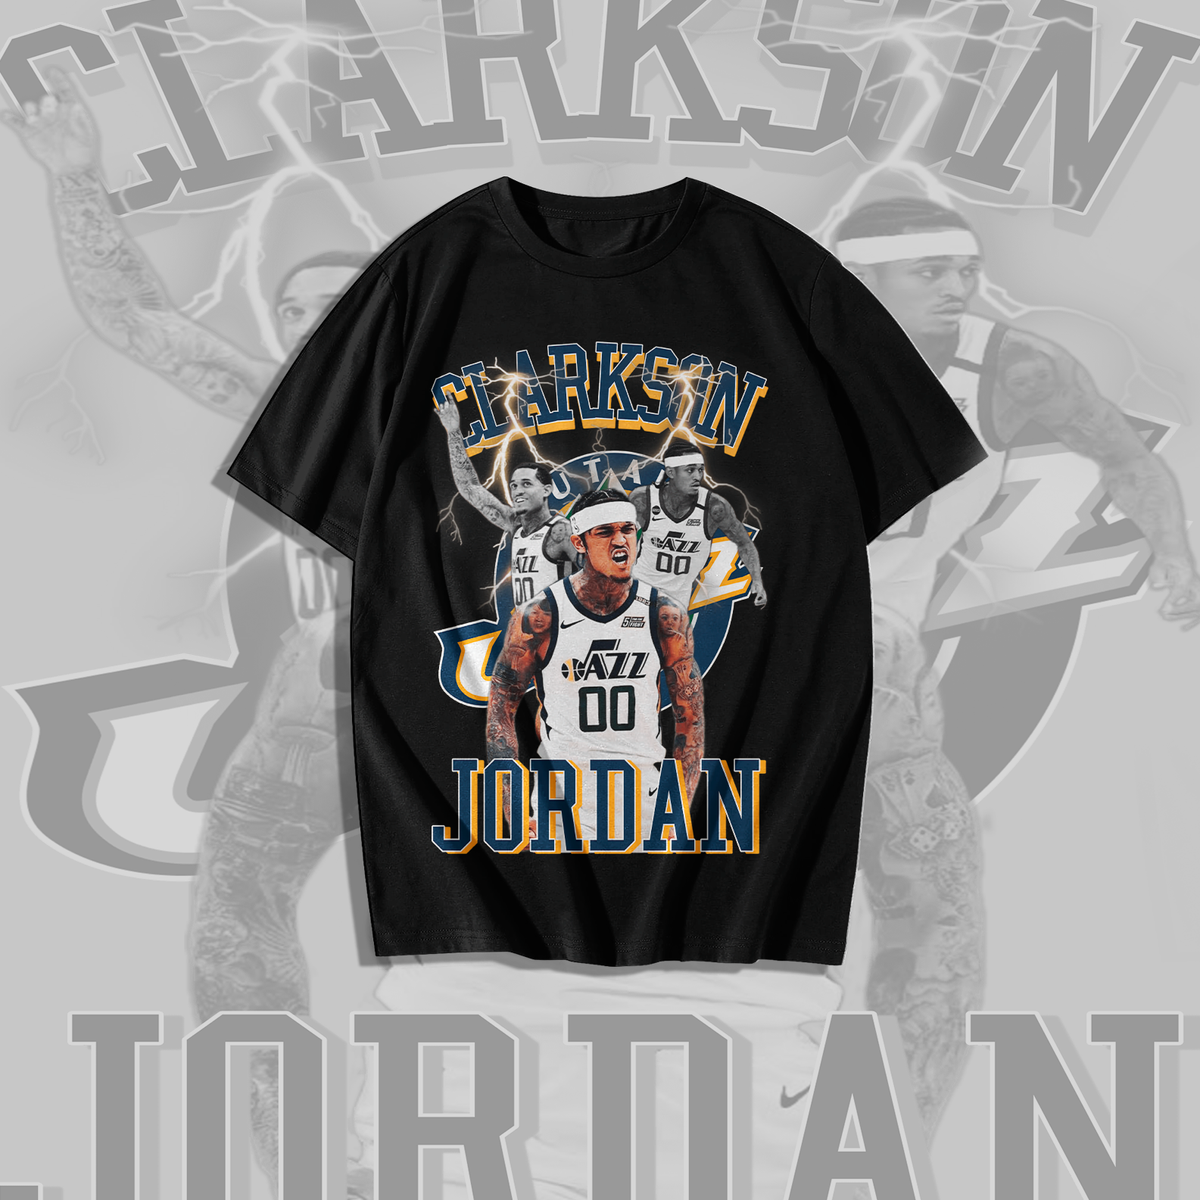 Nome do produto: Camiseta Jordan Clarkson